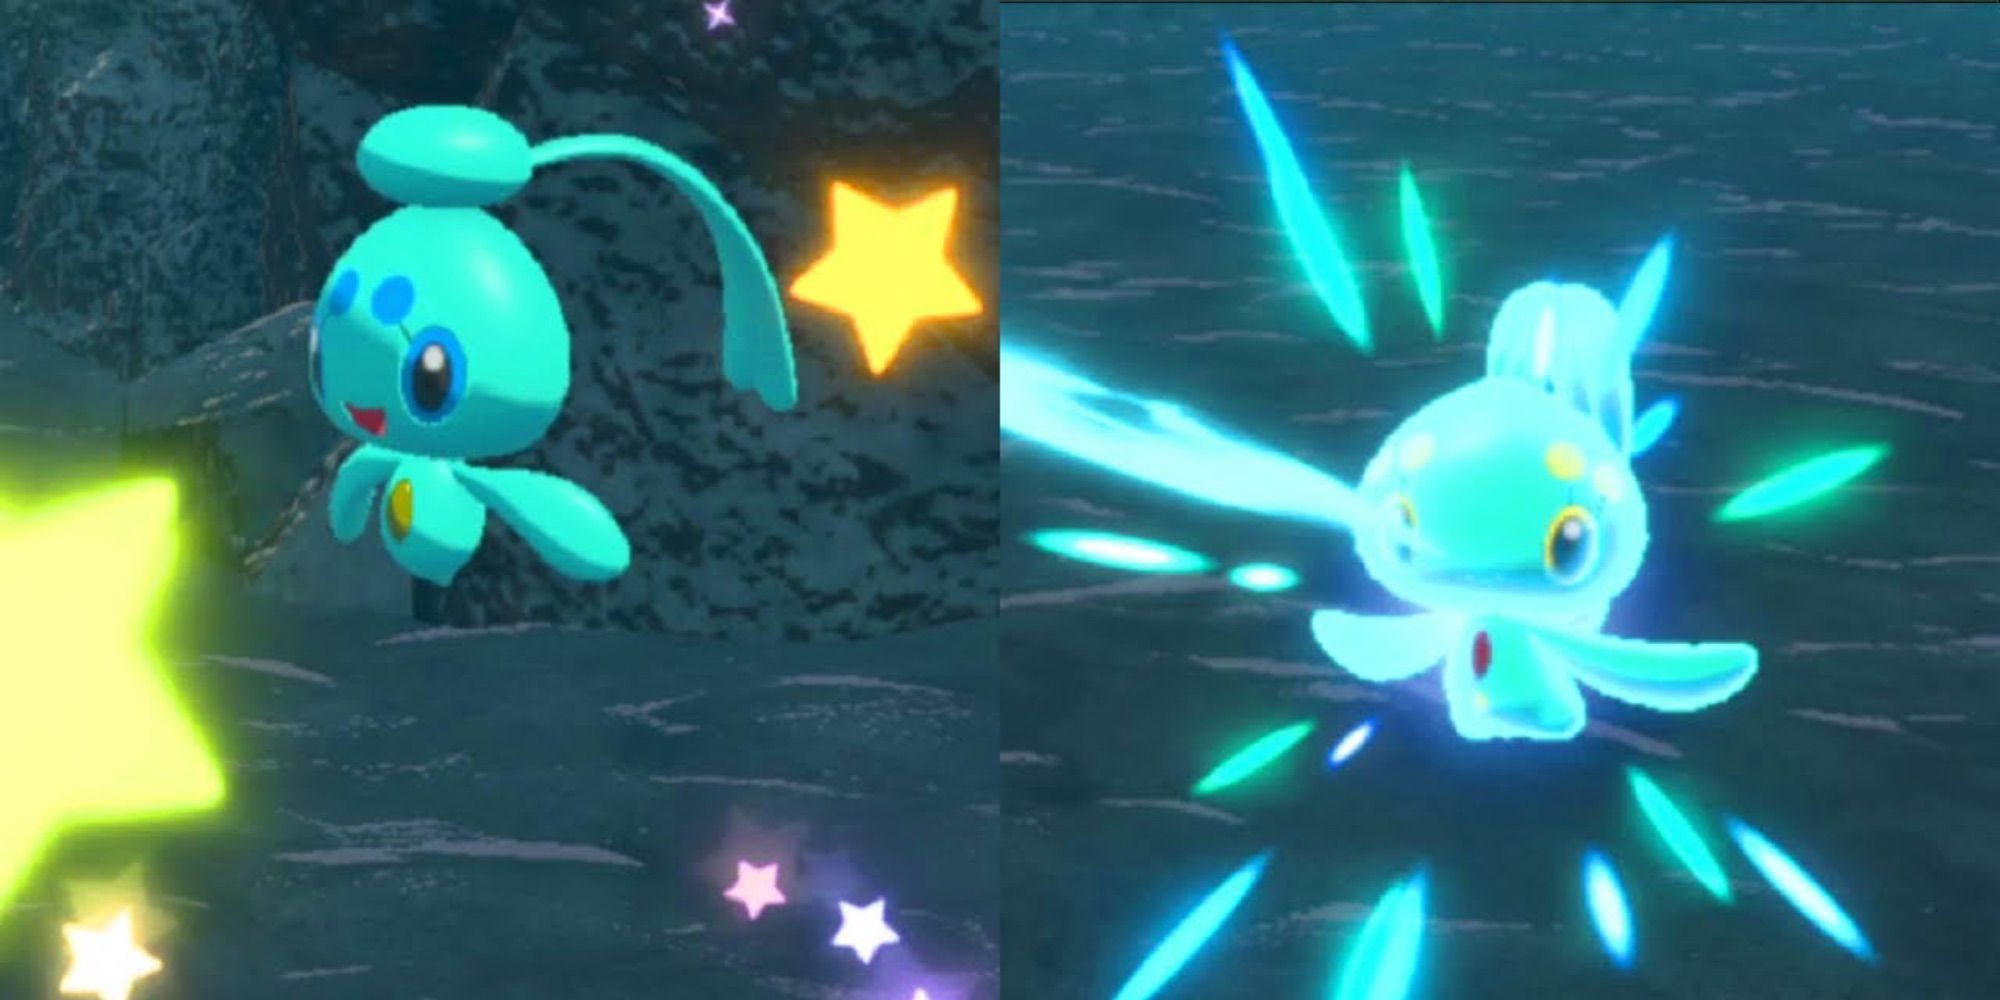 Pokémon Legends Arceus Shiny Pokémon: How to get Shiny Pokémon